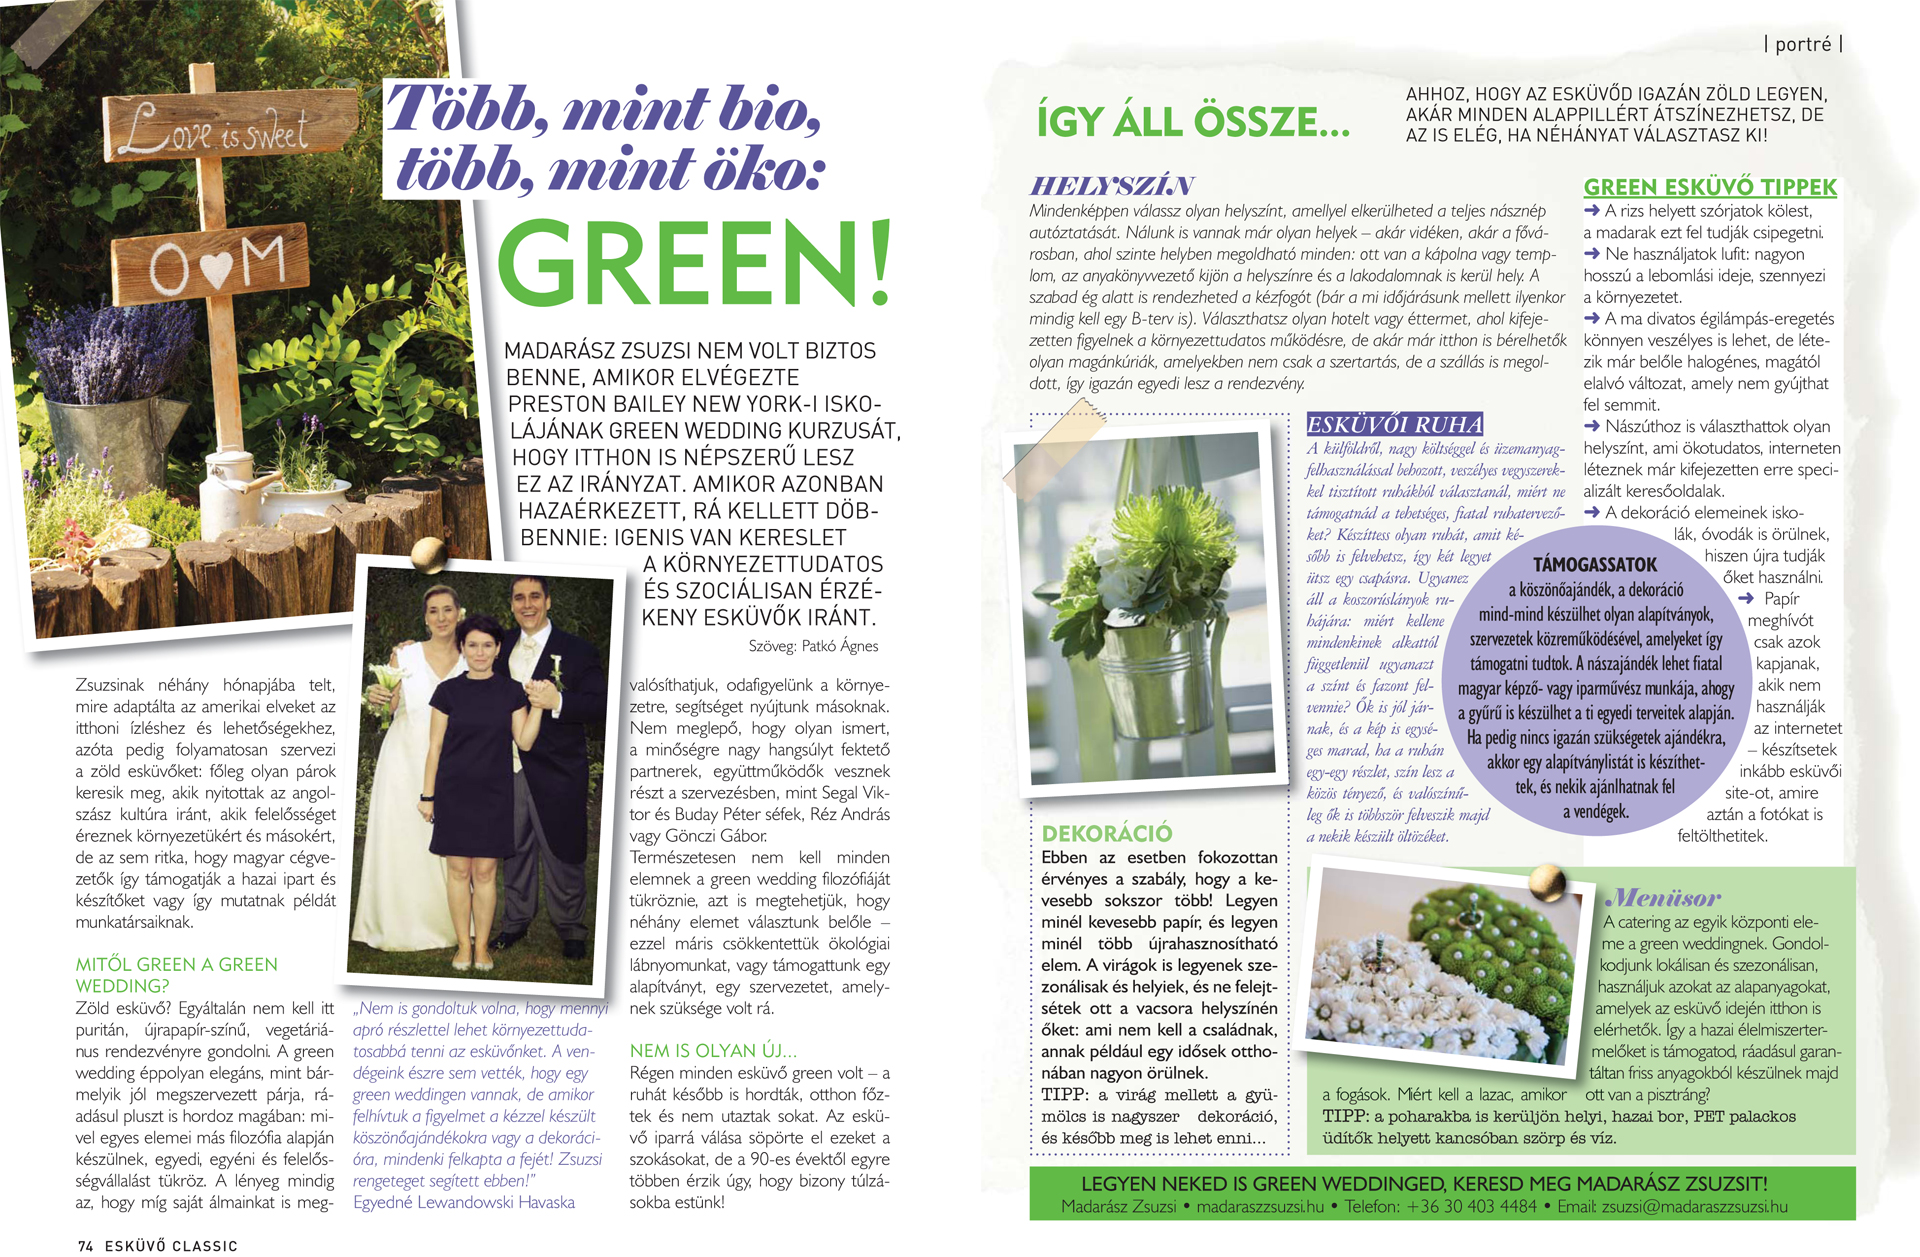 Több, mint bio, több, mint öko: GREEN! – Esküvő classic magazin